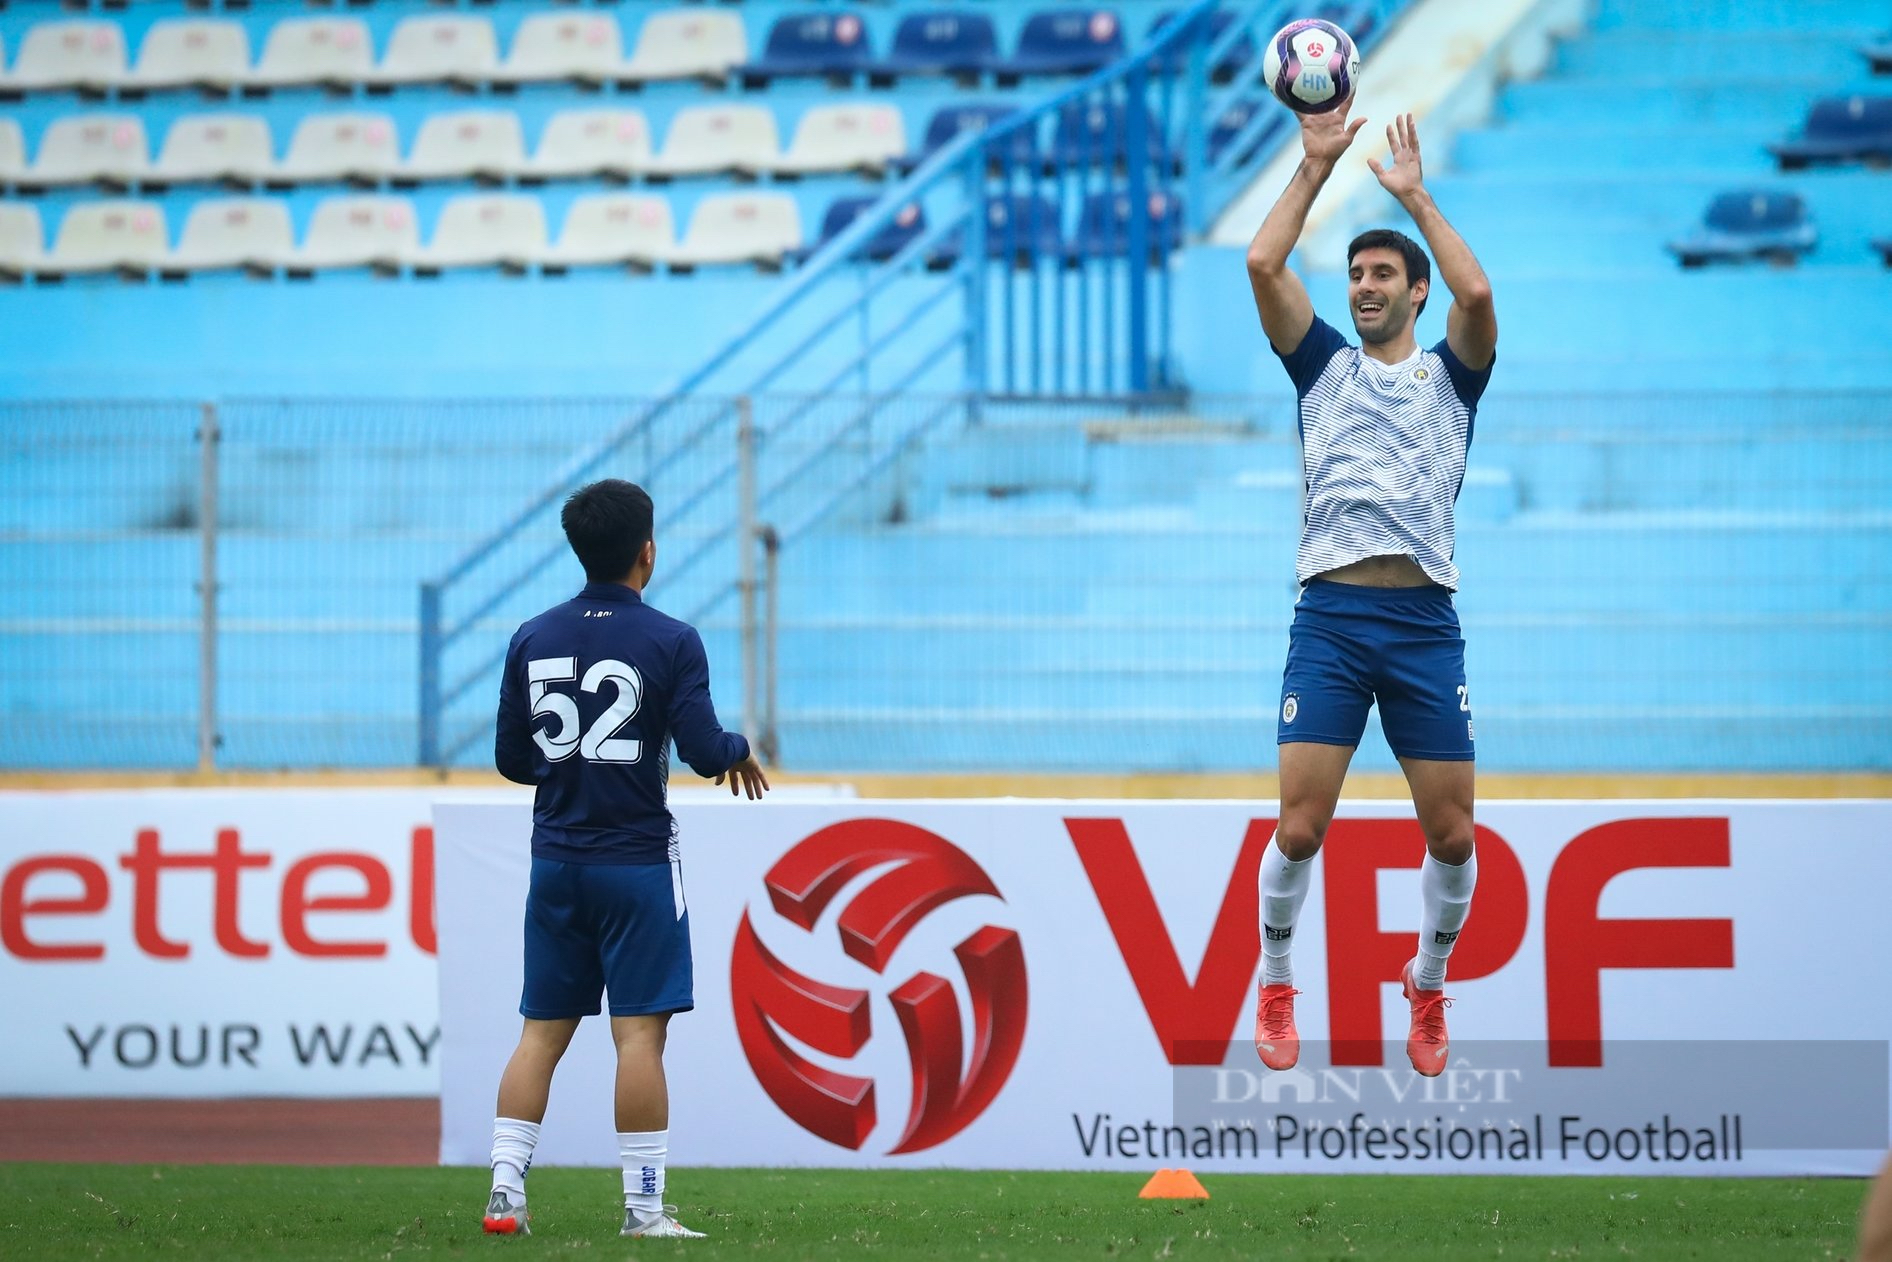 Ba tuyển thủ U23 Việt Nam ở CLB Hà Nội lên đá tại V.League - Ảnh 8.